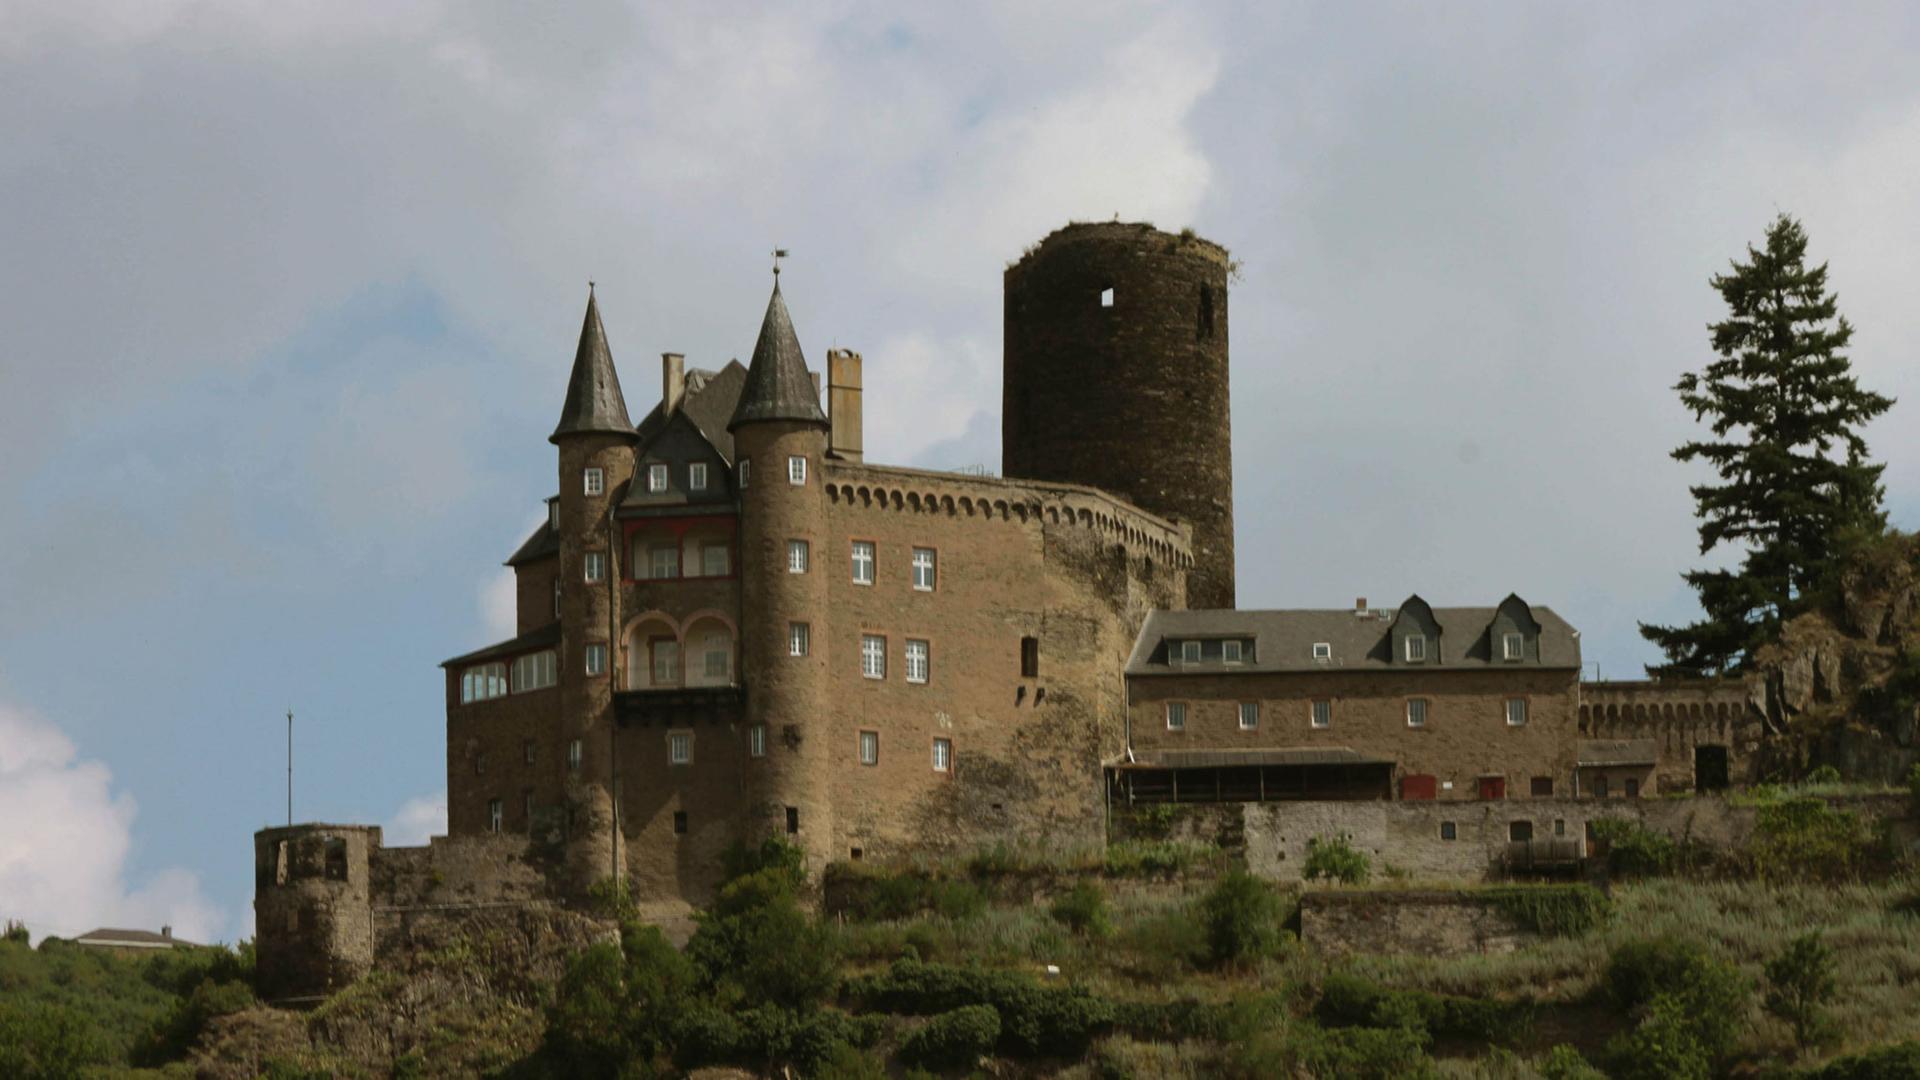 Die Burg Katz ist eine der mächtigen erhaltenen Burgen am Mittelrhein